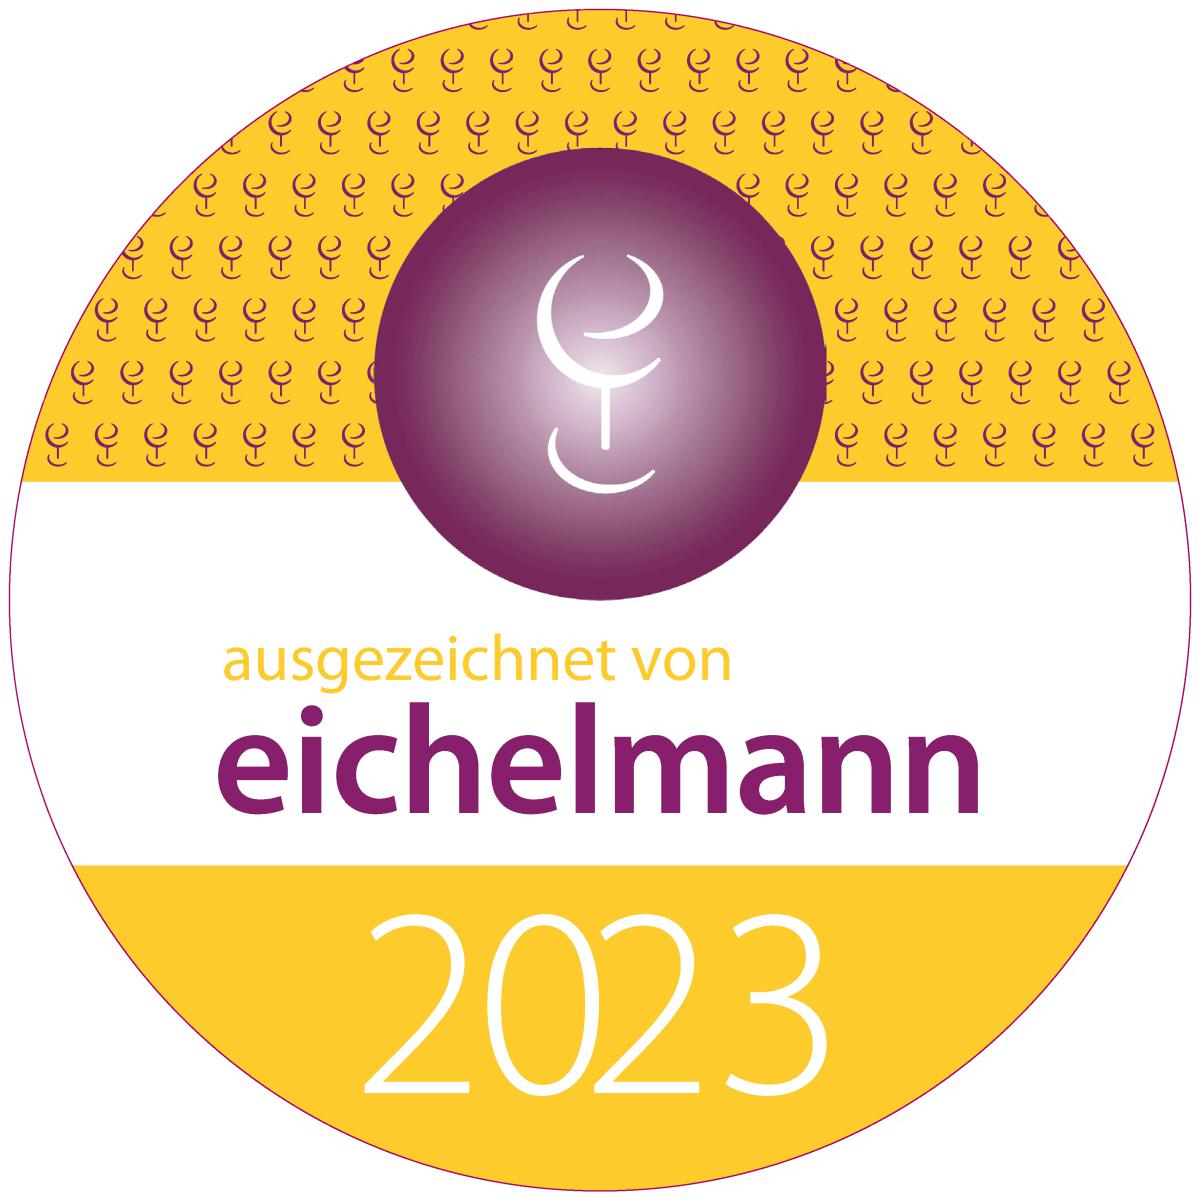 Eichelmann Urkunde 2023